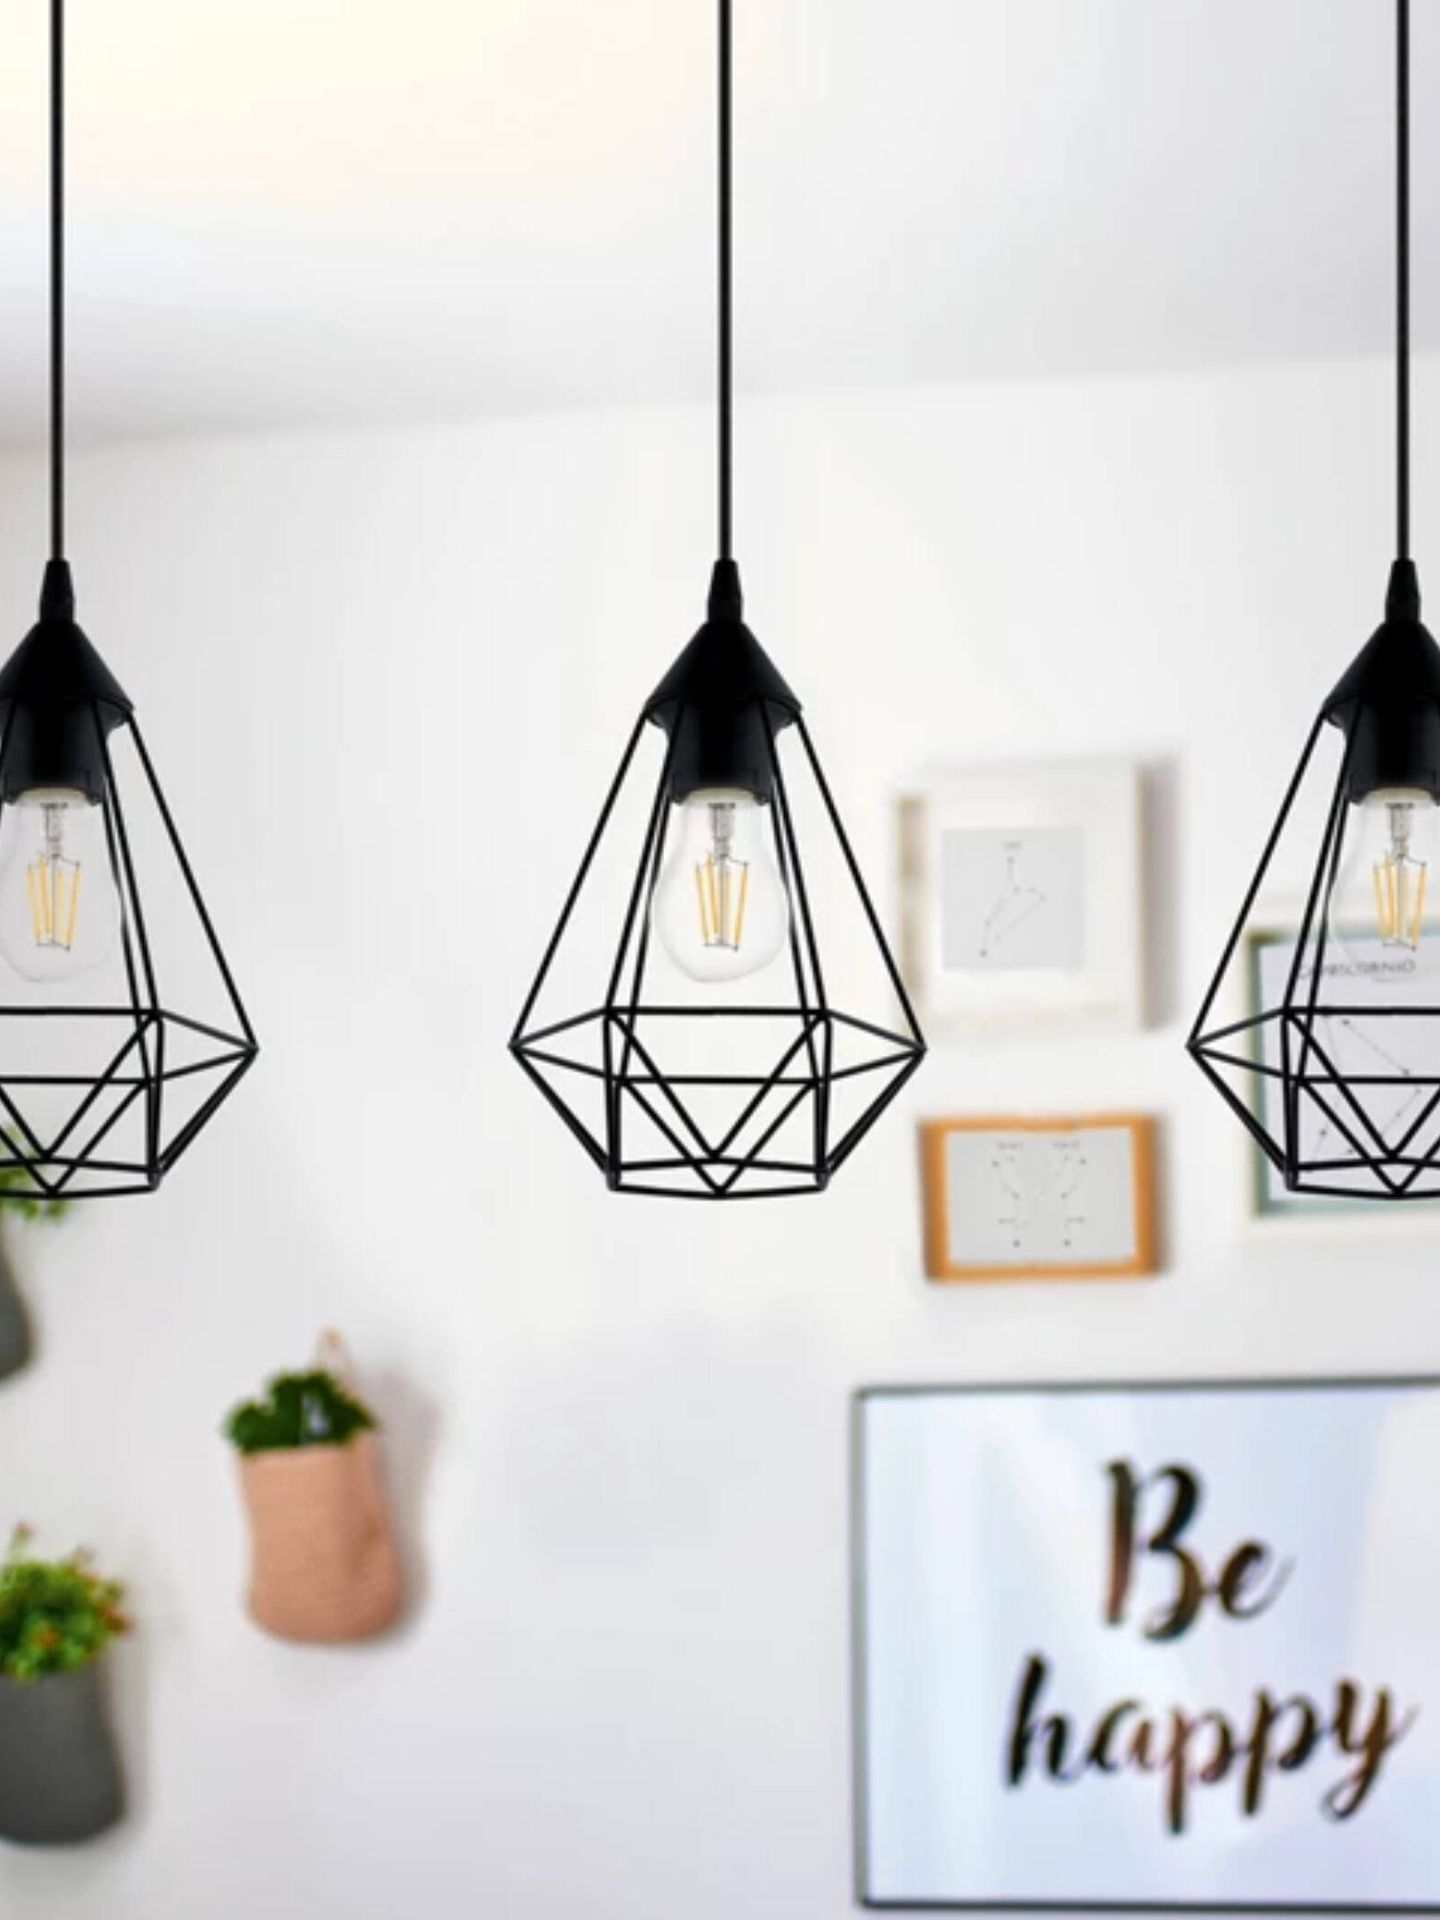 Lámparas low cost tipo jaula para darle a tu casa un toque moderno. (Cortesía/Leroy Merlin)